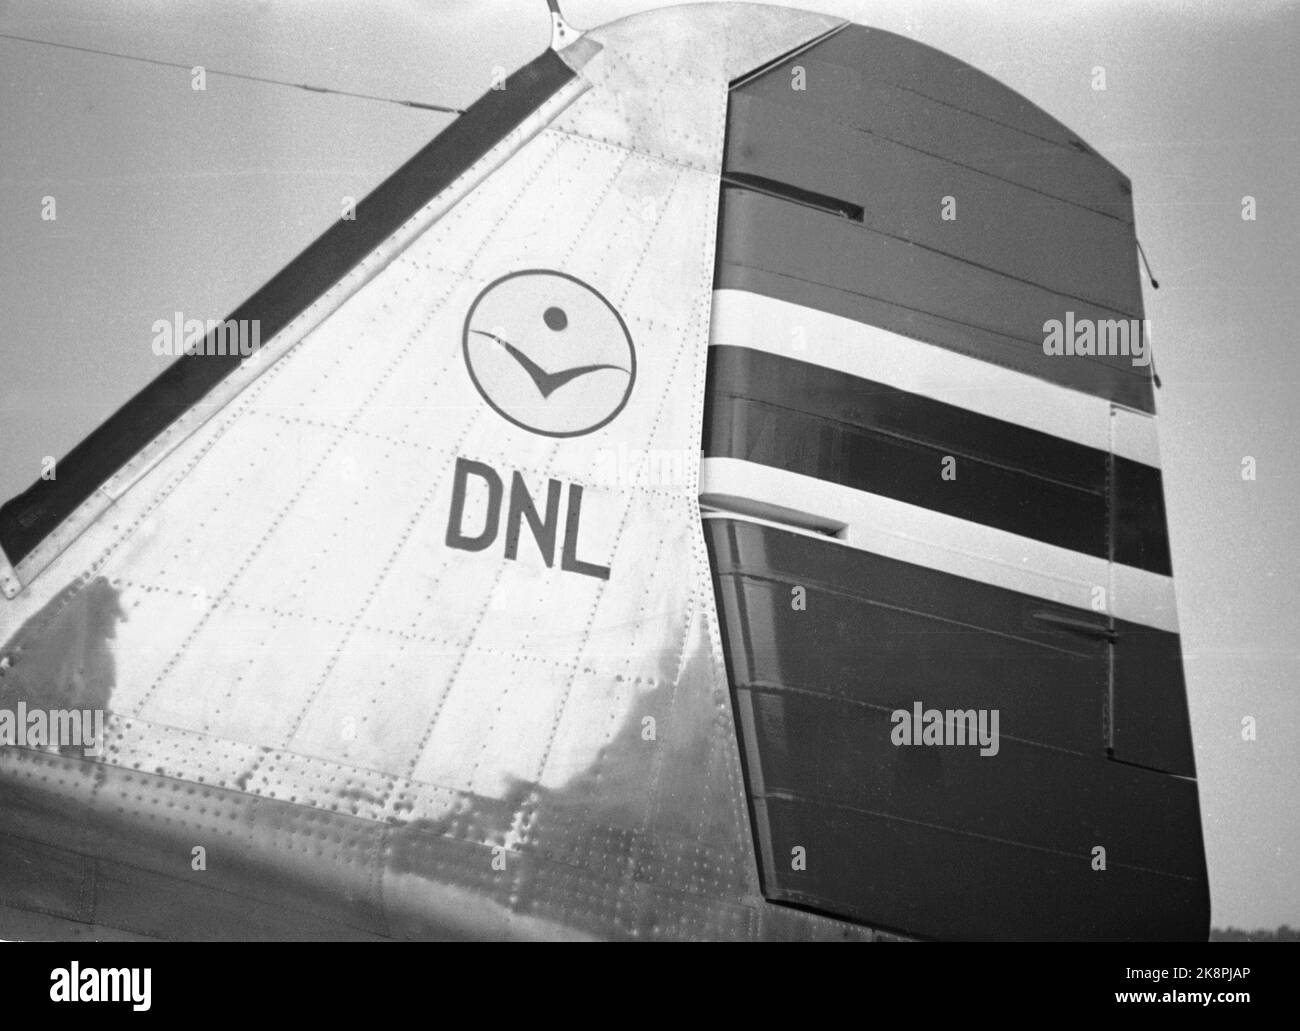 Oslo 19461002 : aéroport de Fornebu. L'ouverture du vol Paris - Oslo. Vols au départ de Norwegian Air Lines/Det Norske Aviation Company A/S (DNL). La queue de vol dans les couleurs norvégiennes rouge, blanc et bleu, ainsi que étiqueté DNL/Det Norske Aviation Company. La Norwegian Aviation Company (DNL) était la compagnie aérienne nationale de la Norvège jusqu'en 1948 et l'une des compagnies qui ont fusionné dans le SAS d'aujourd'hui (à partir de 2014) NTB stock photo: W. Lundberg / NTB Banque D'Images